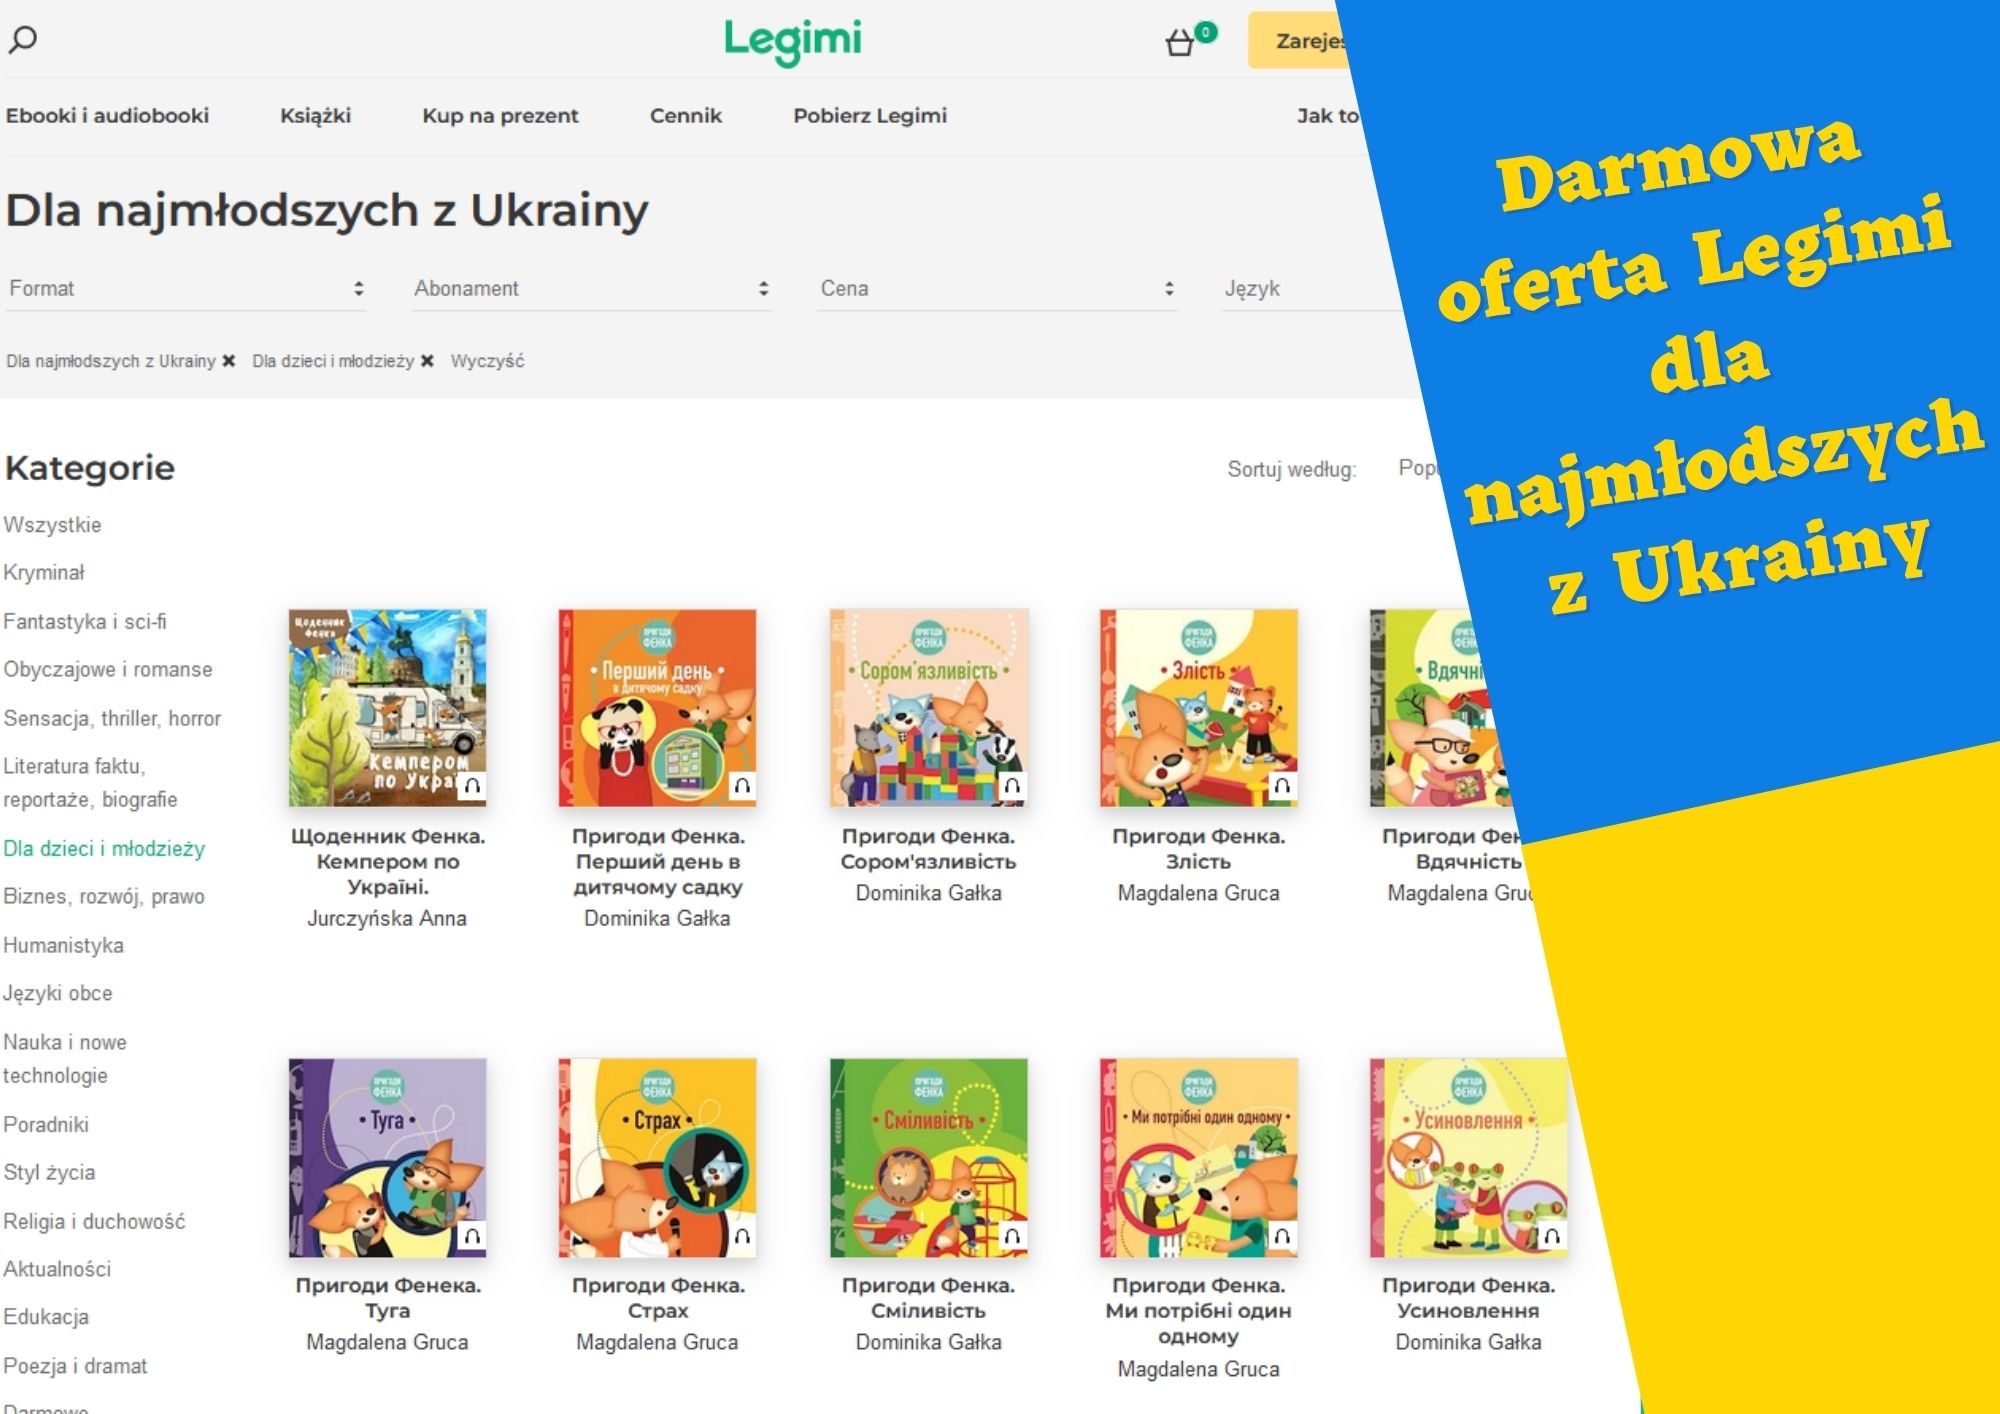 Zrzut ekranu z listą książek w języku ukraińskim. Po prawej niebiesko=żólta informacja o treści Darmowa oferta Legimi dla najmłodszych z Ukrainy.